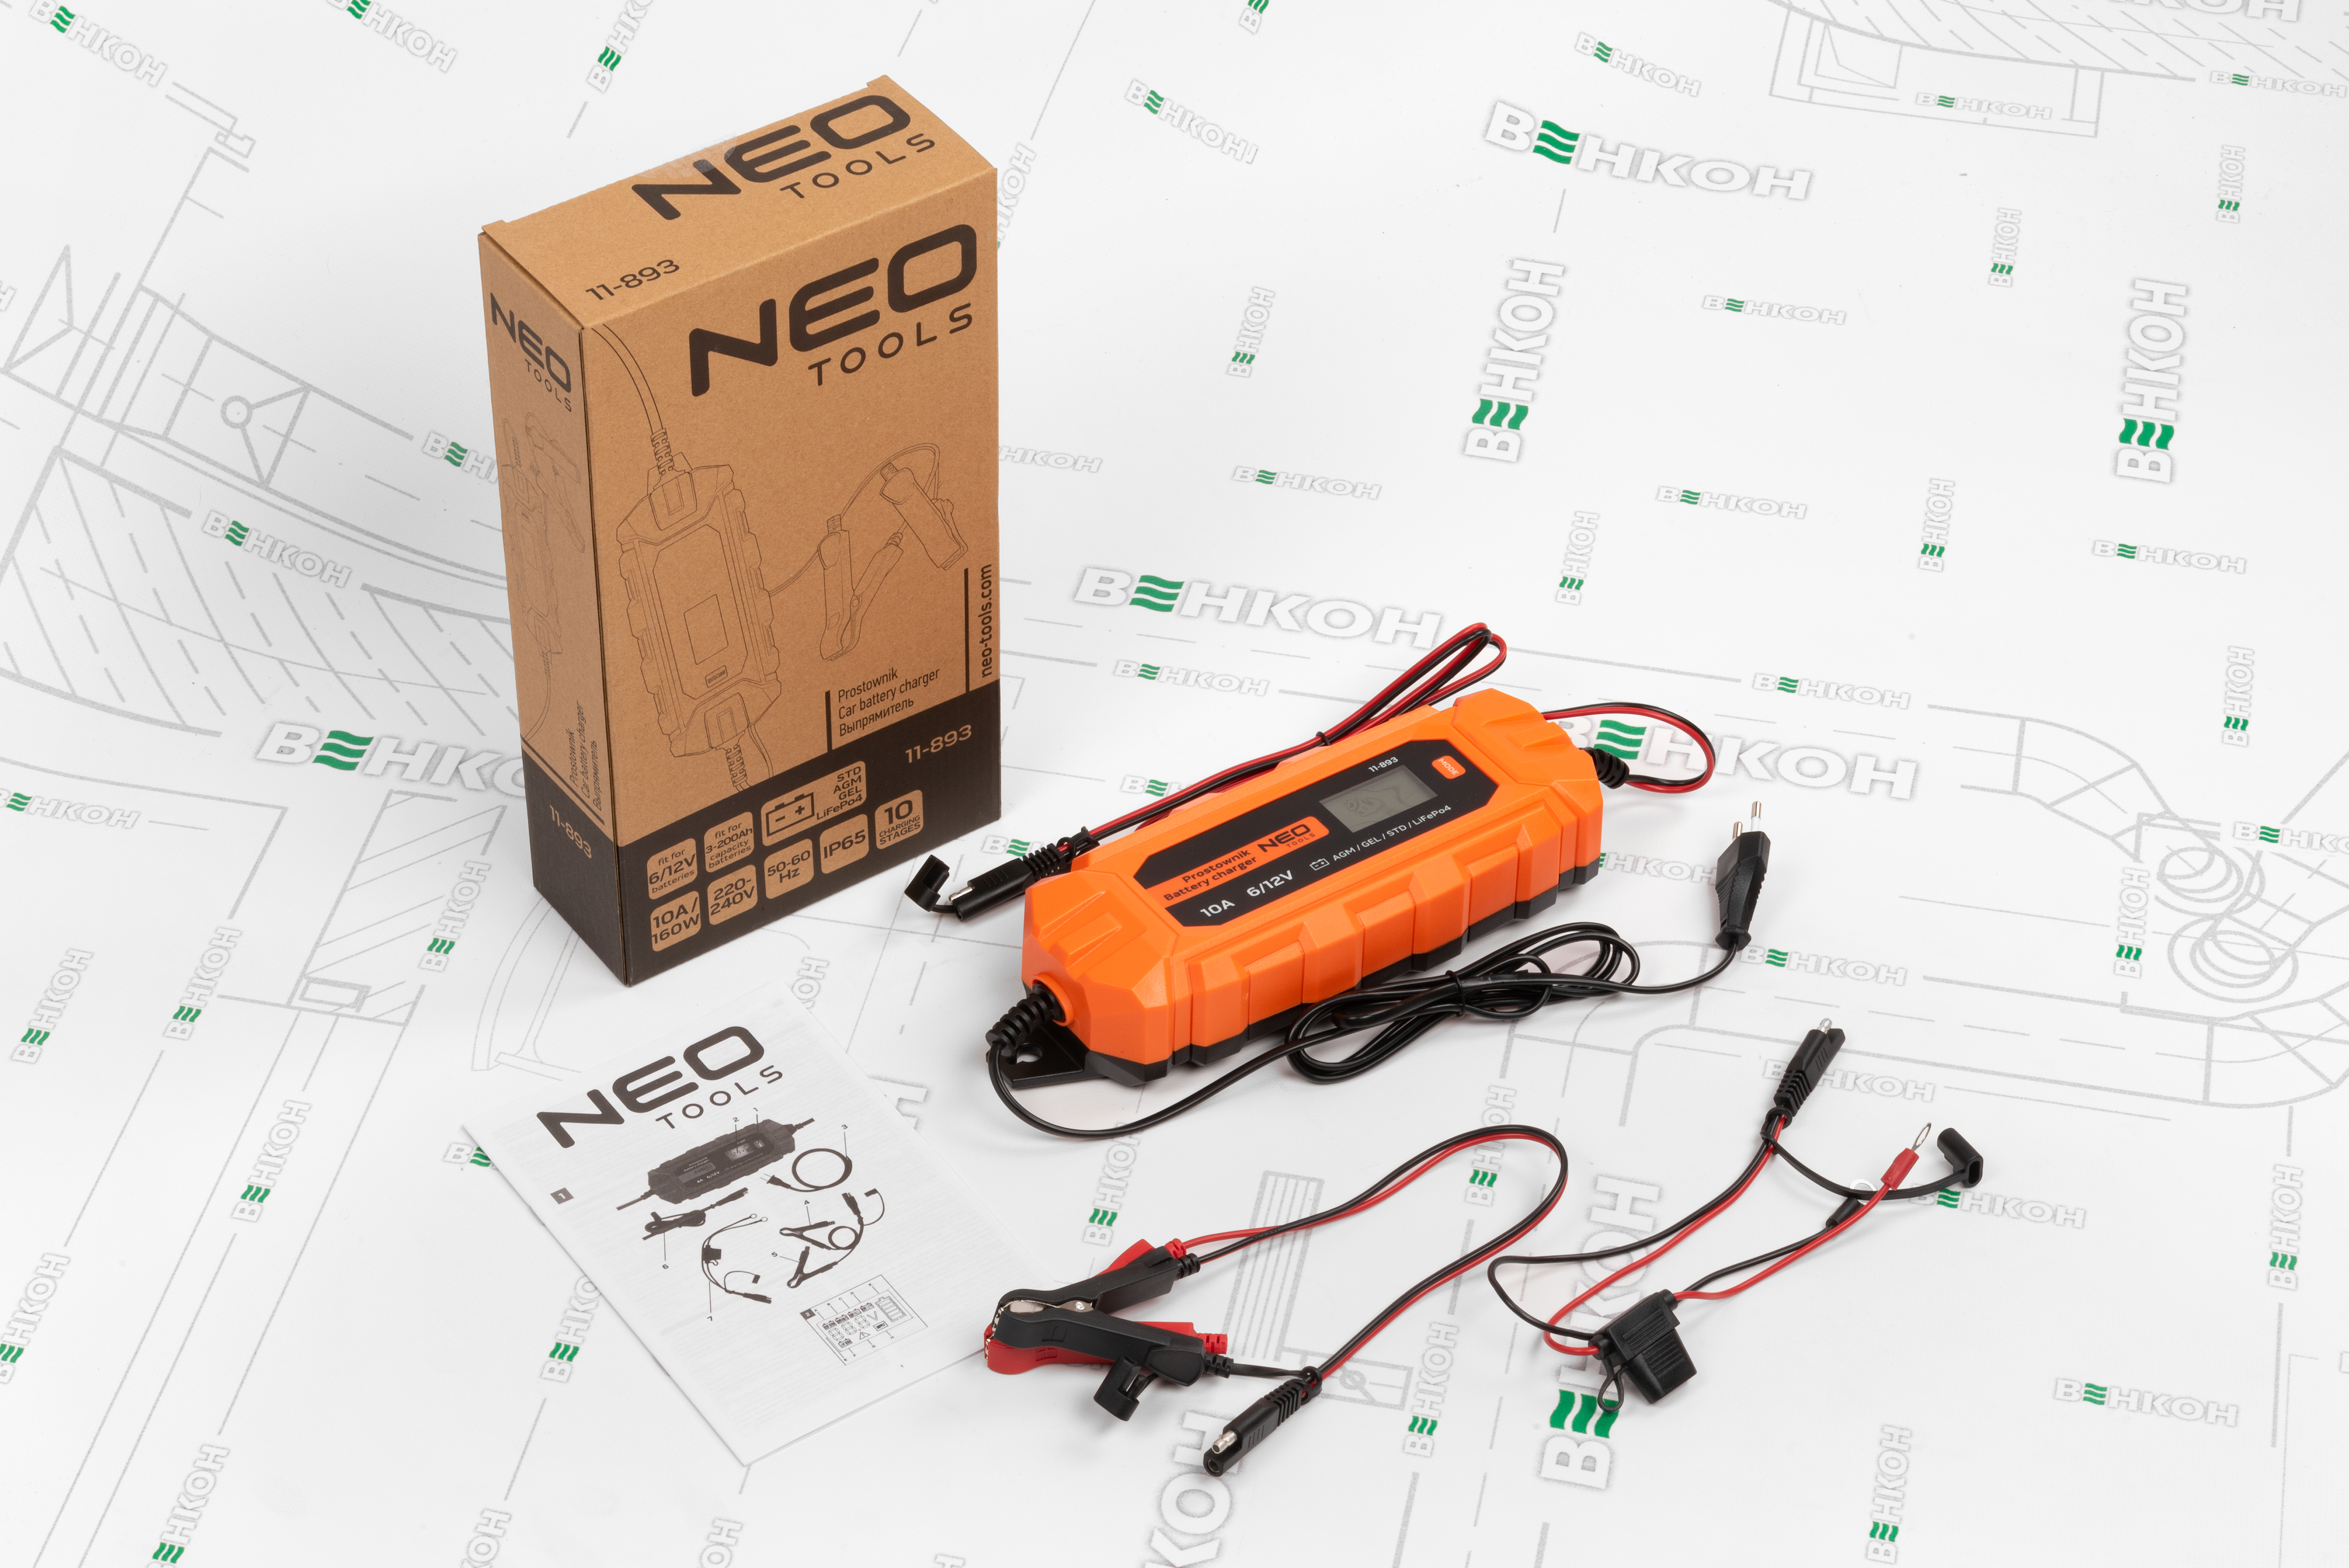 Интеллектуальное зарядное устройство Neo Tools 11-893 характеристики - фотография 7